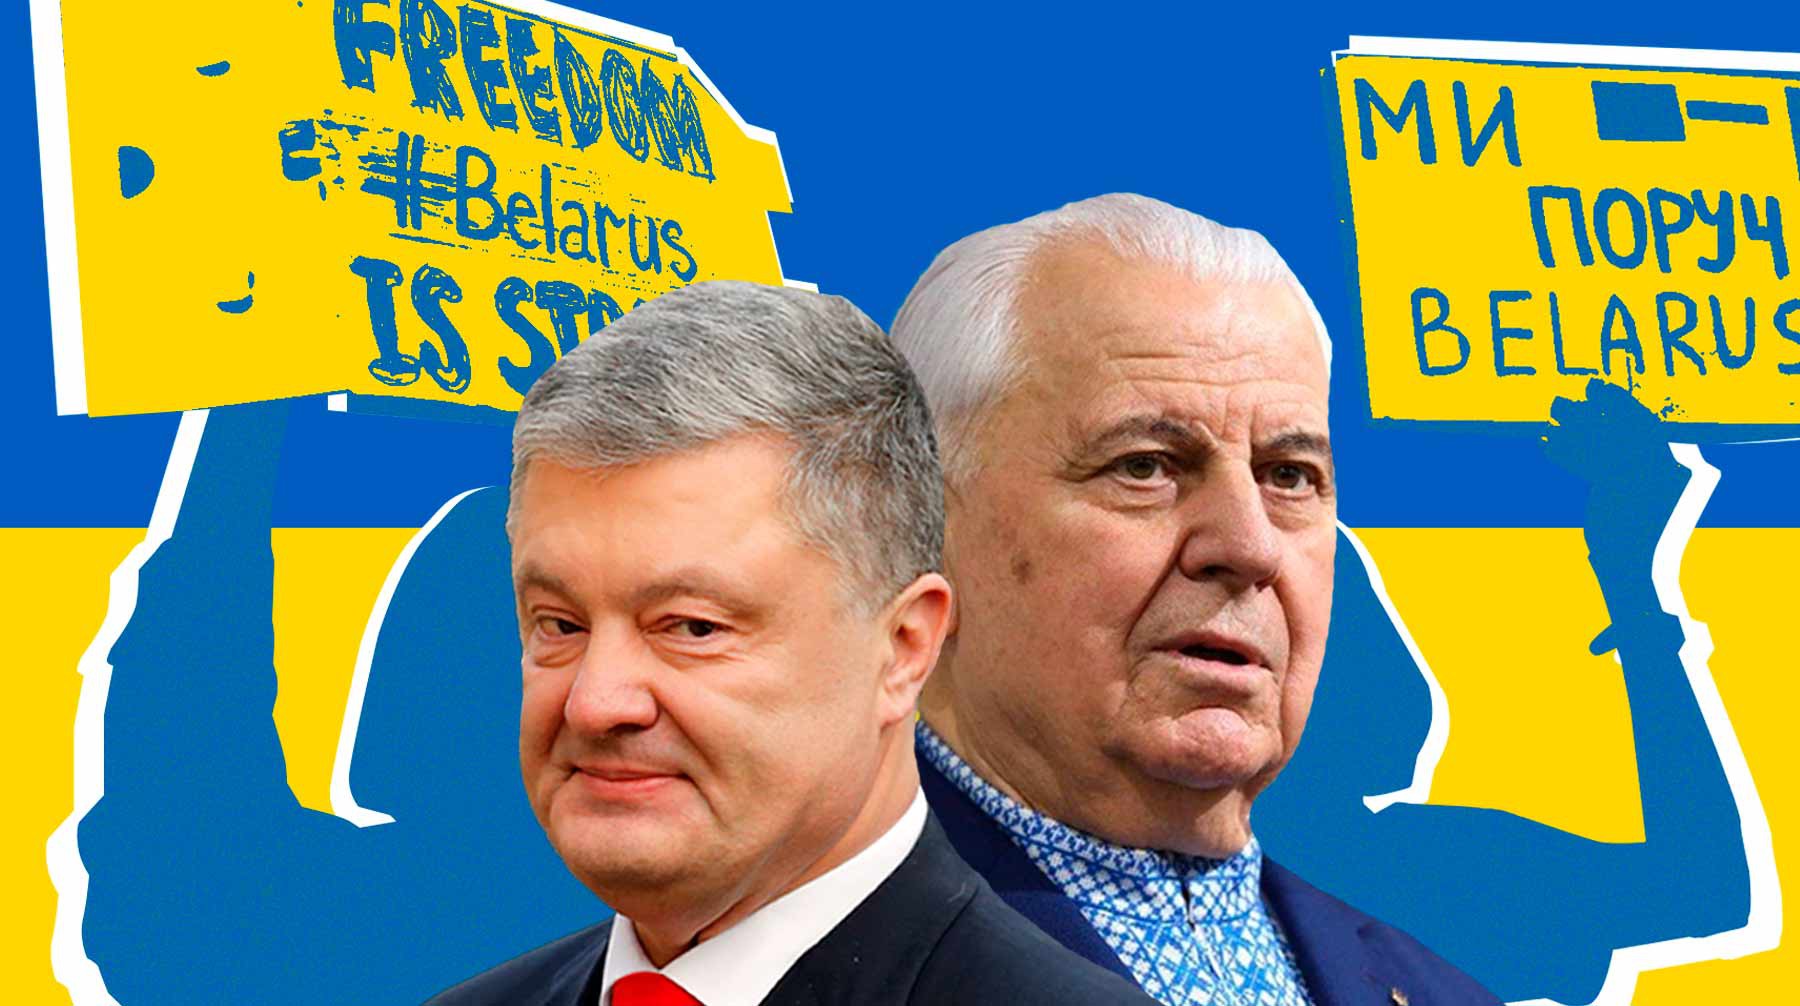 Dailystorm - Украинской Партии войны нужна революция в Белоруссии